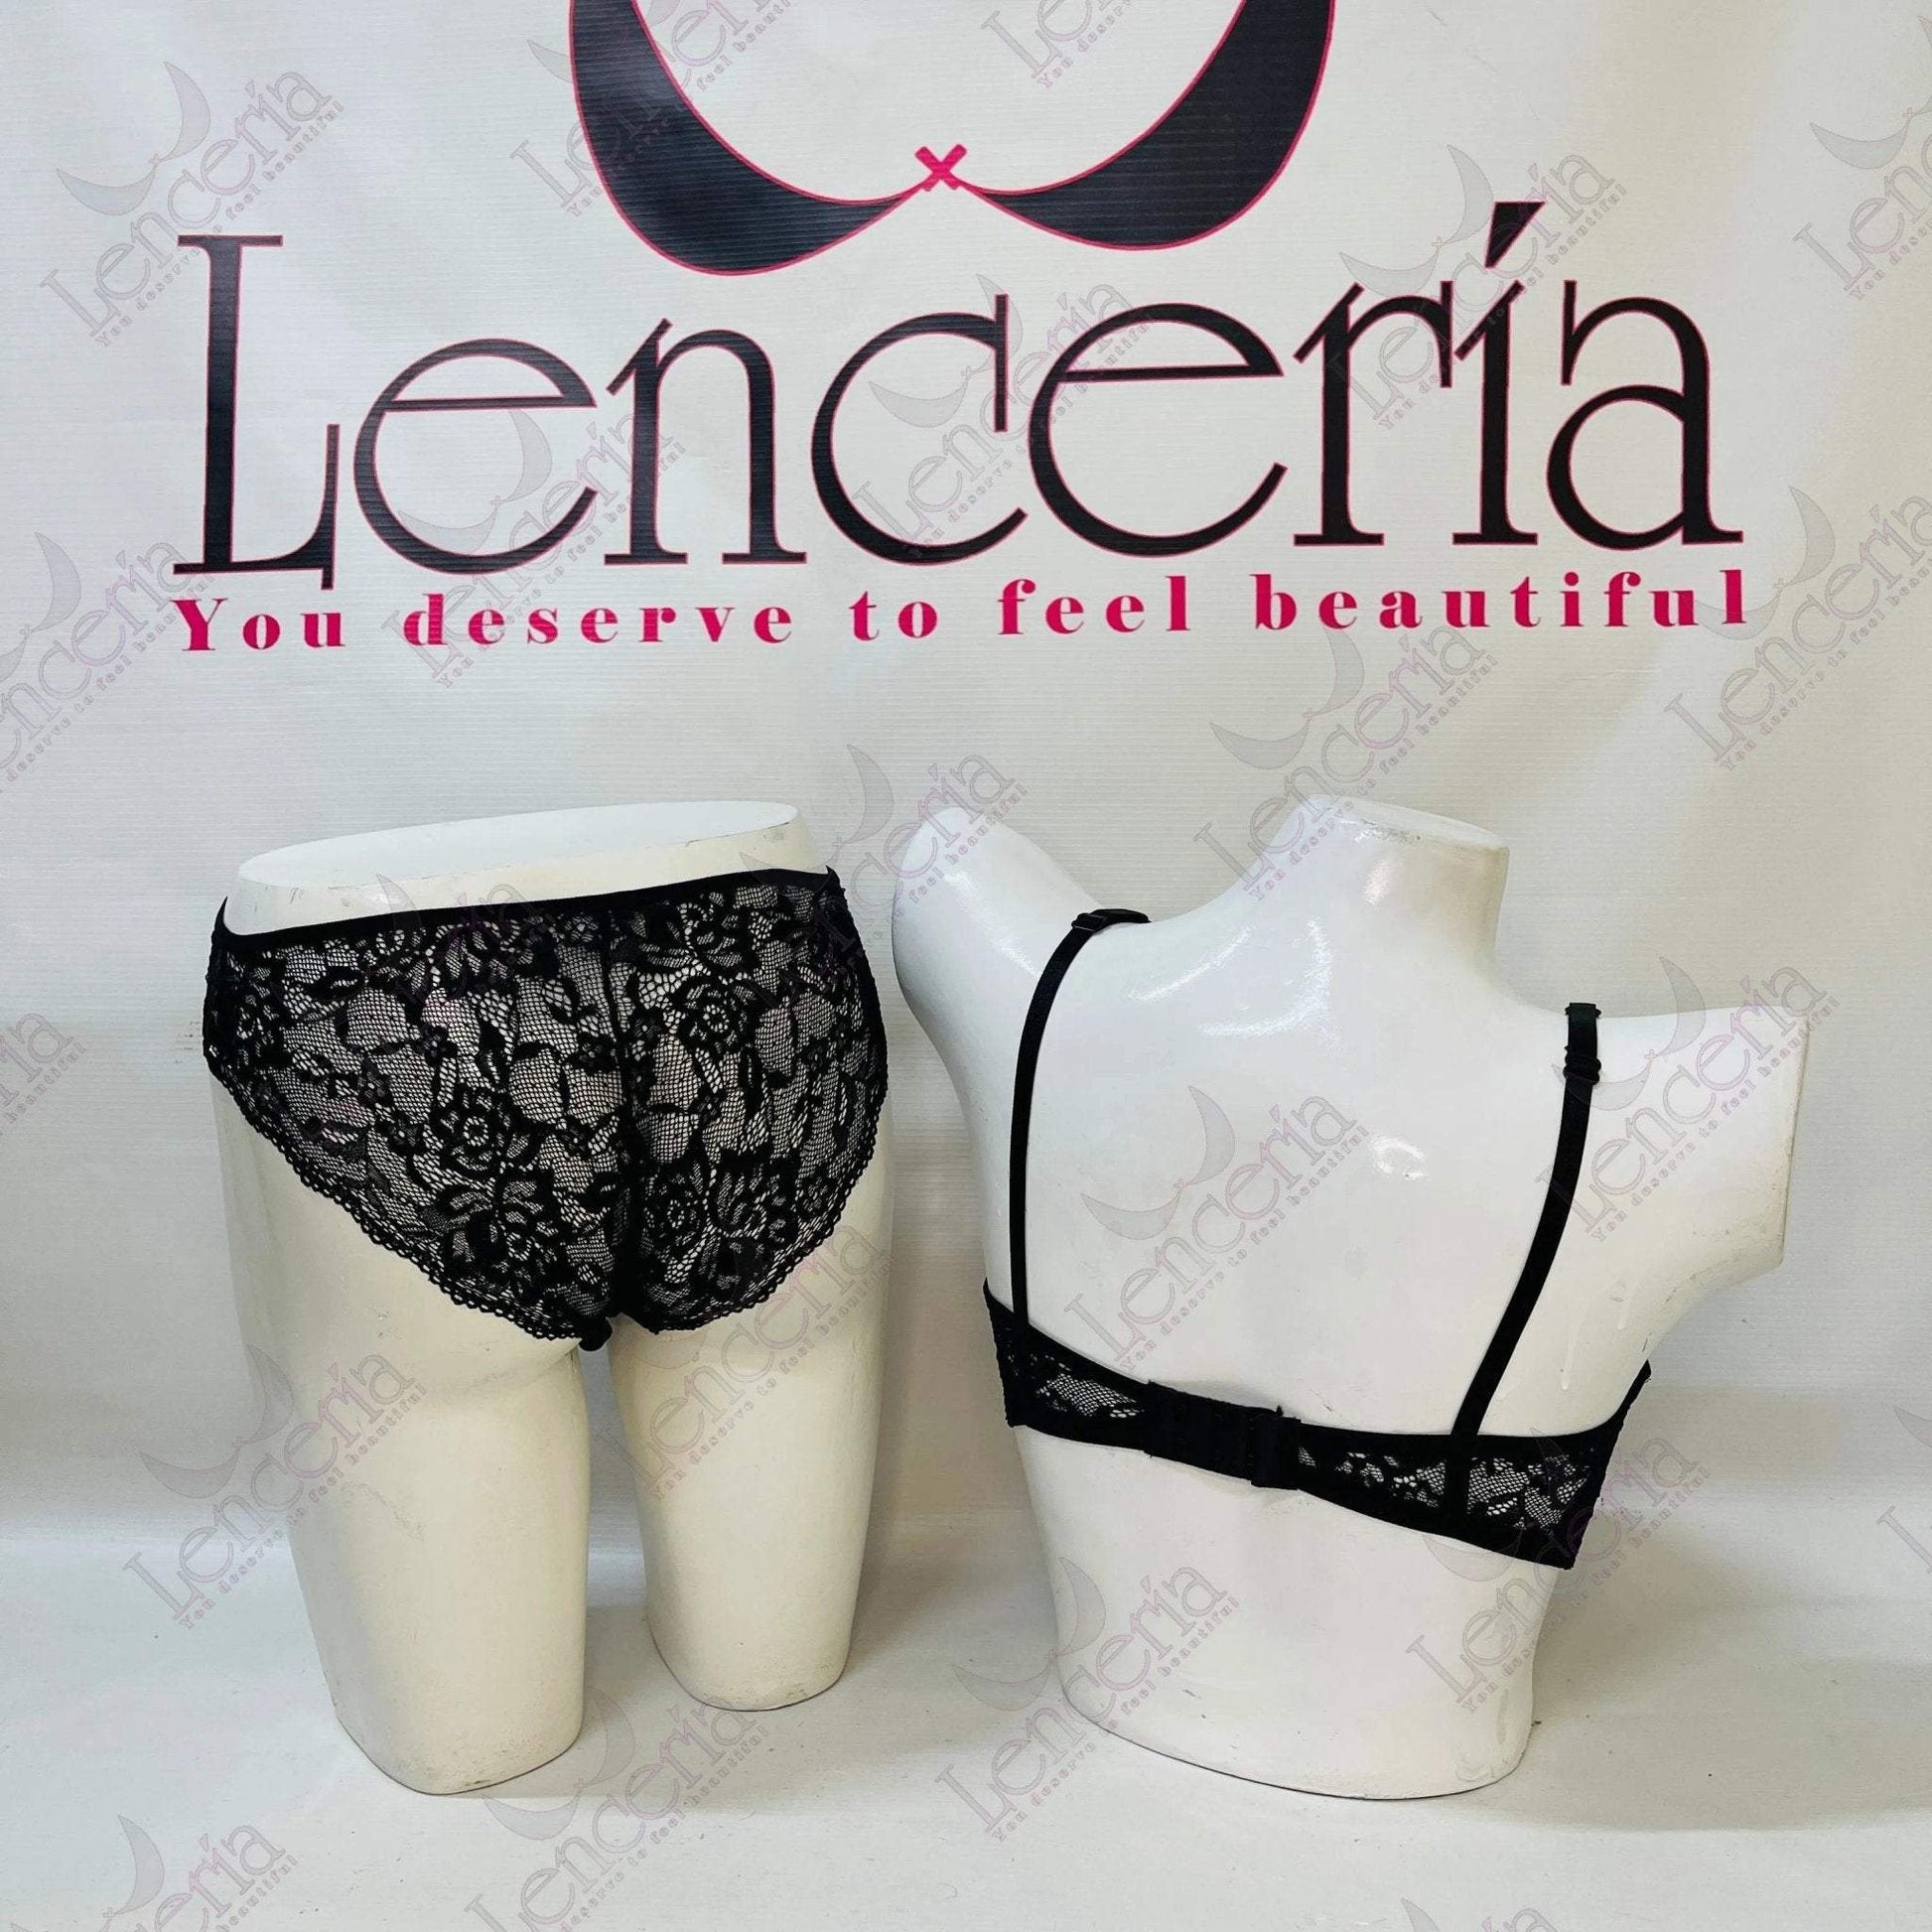 Cheriee nocte velvet & embroidered lingerie set - extremely beautiful (c73) - Lenceria-lingerie.pk